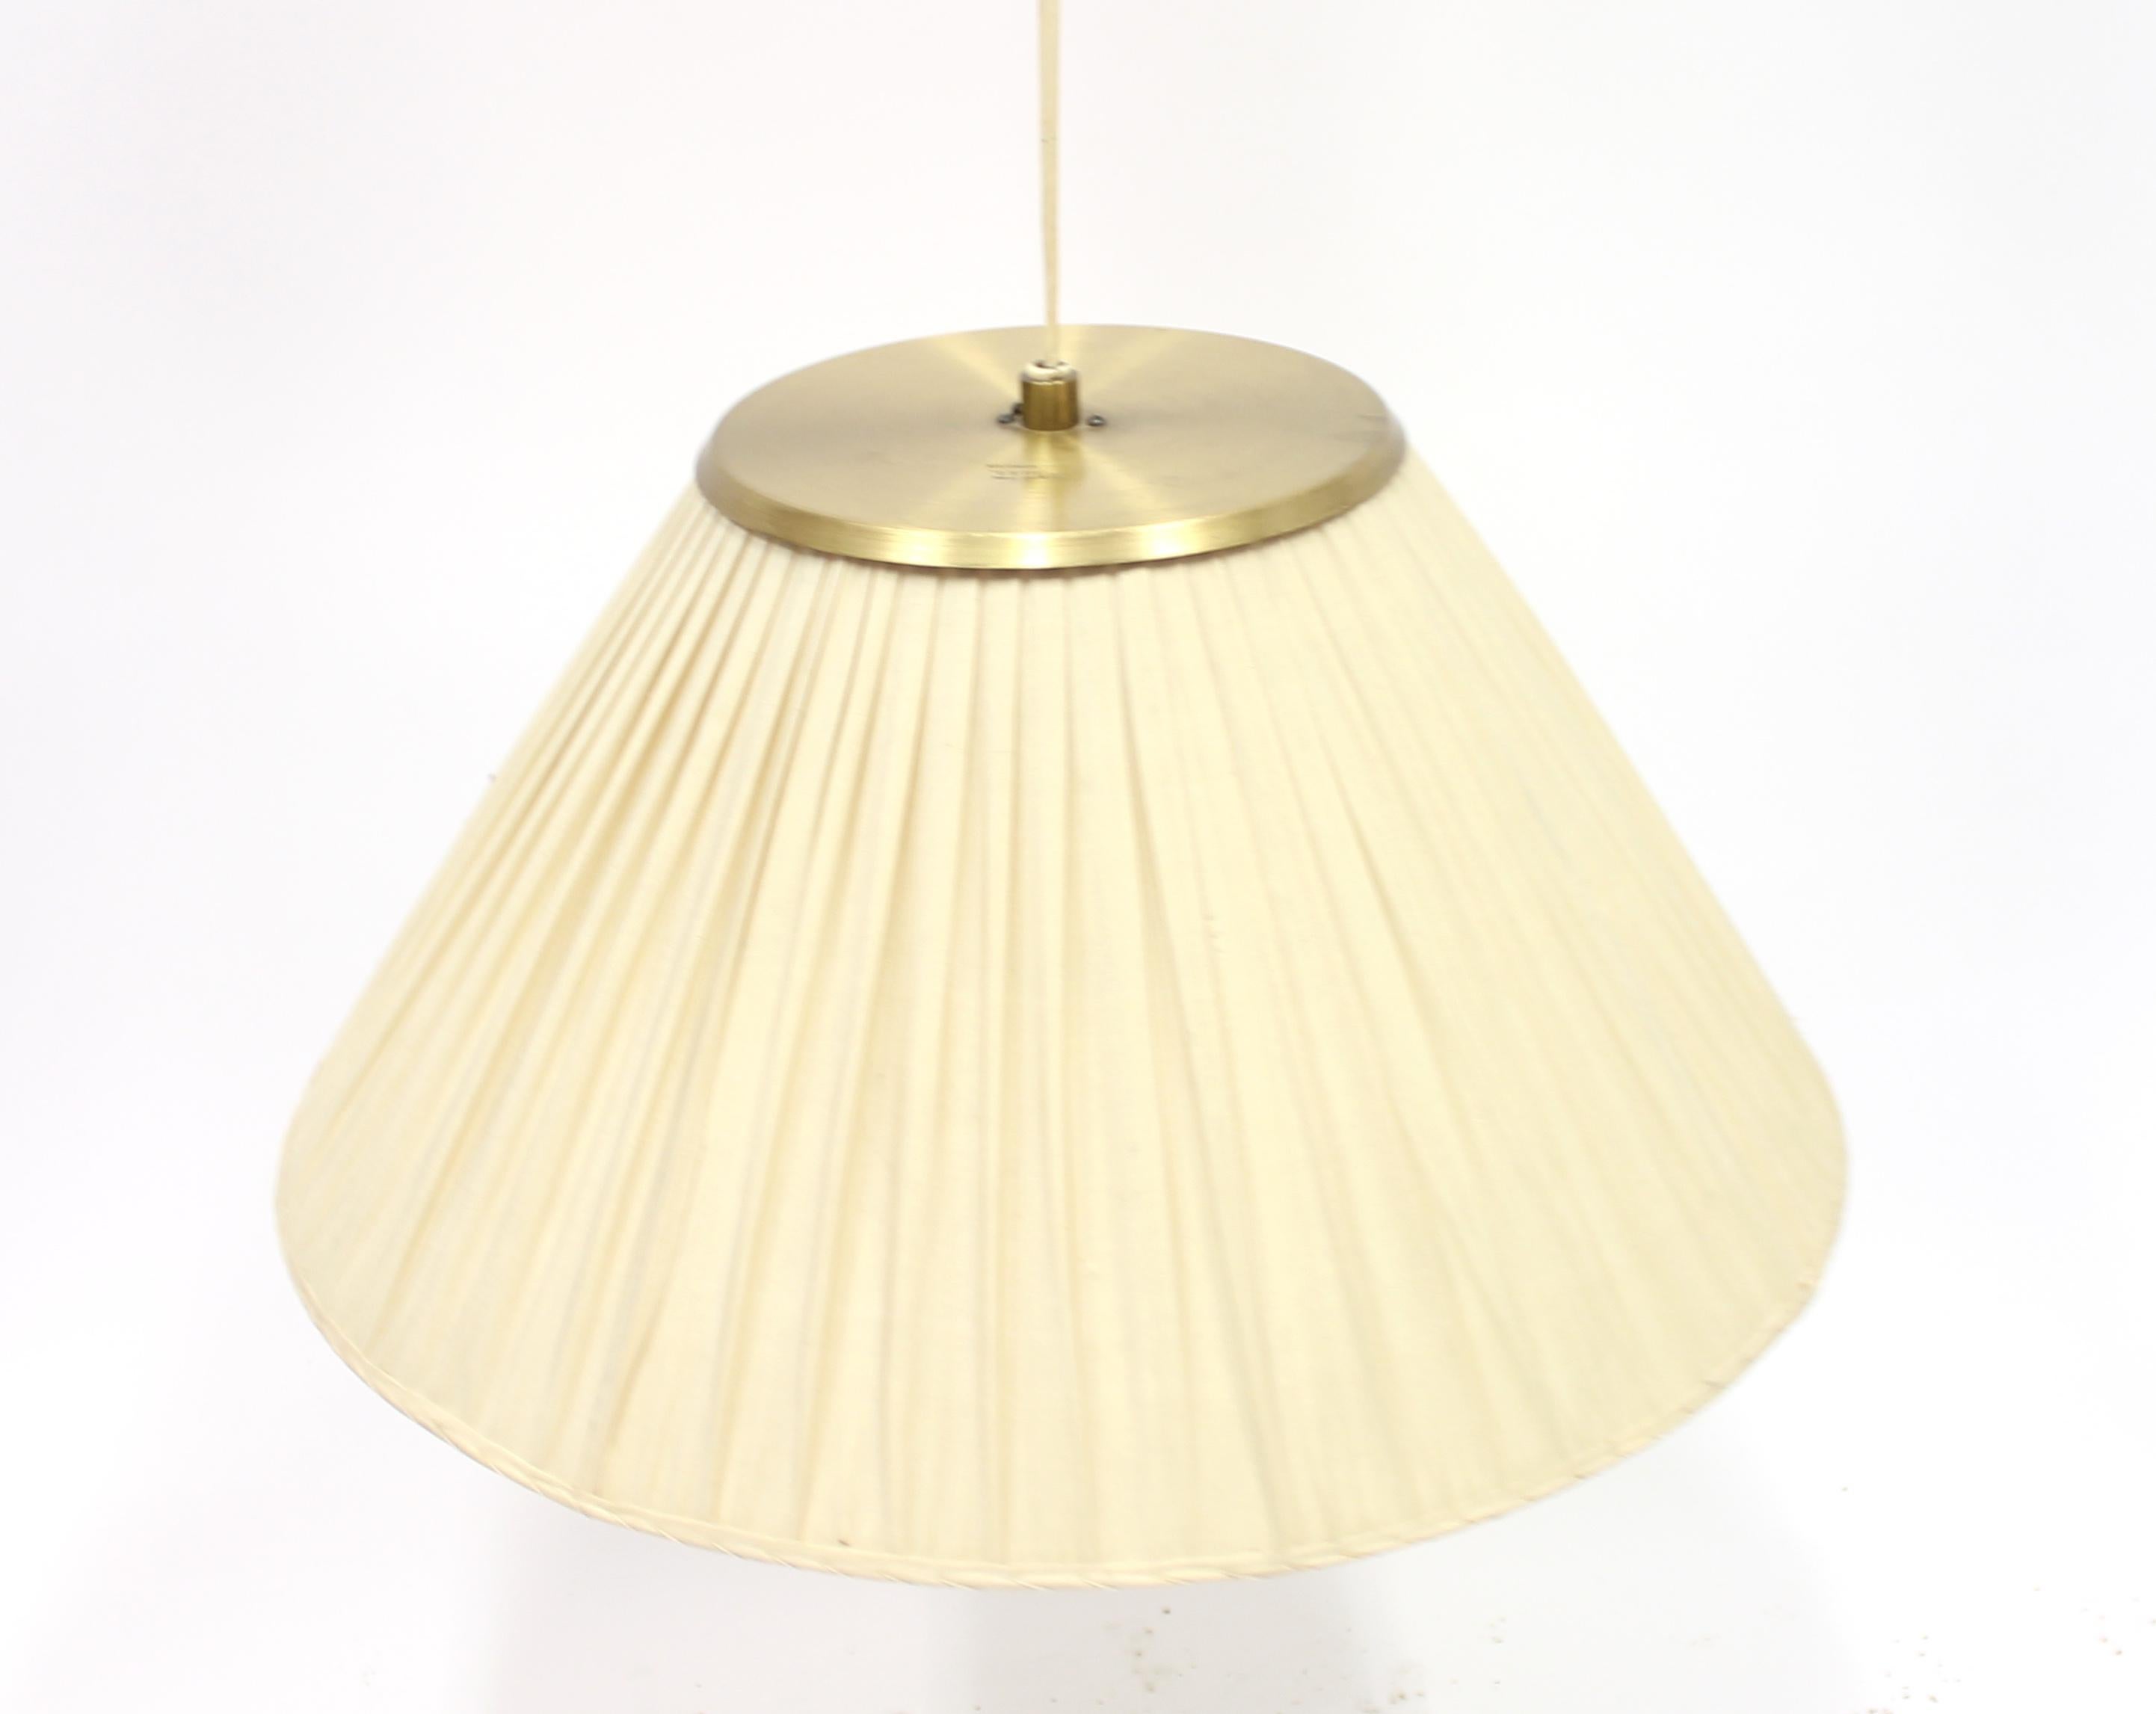 Swedish Rare Model 1844 Ceiling Lamp by Josef Frank for Svenskt Tenn, 1950s